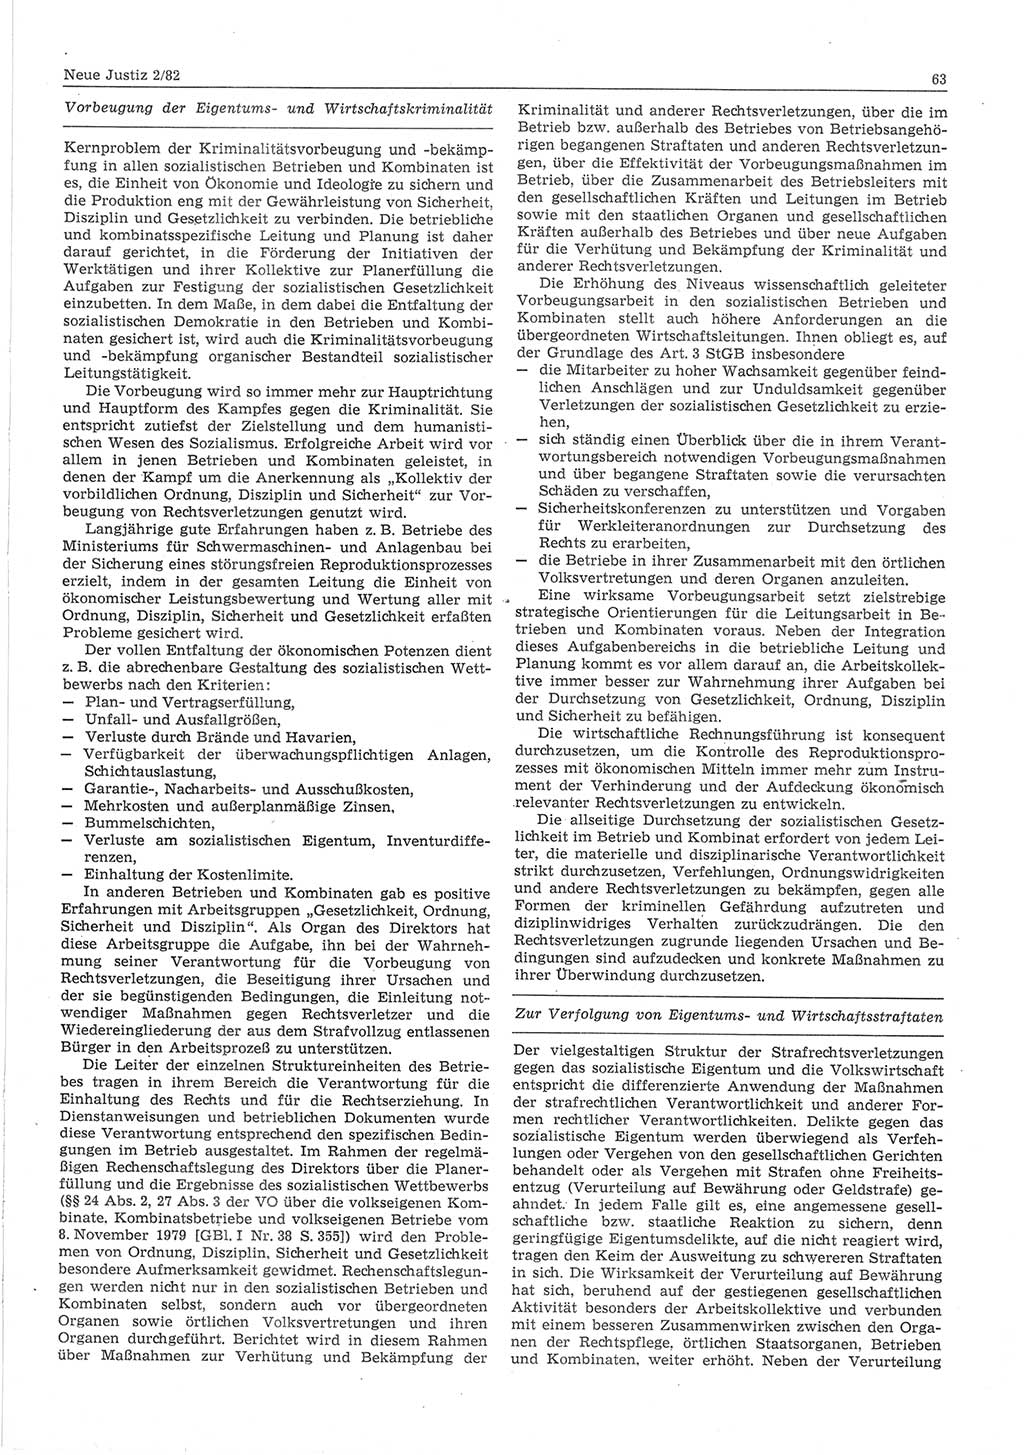 Neue Justiz (NJ), Zeitschrift für sozialistisches Recht und Gesetzlichkeit [Deutsche Demokratische Republik (DDR)], 36. Jahrgang 1982, Seite 63 (NJ DDR 1982, S. 63)